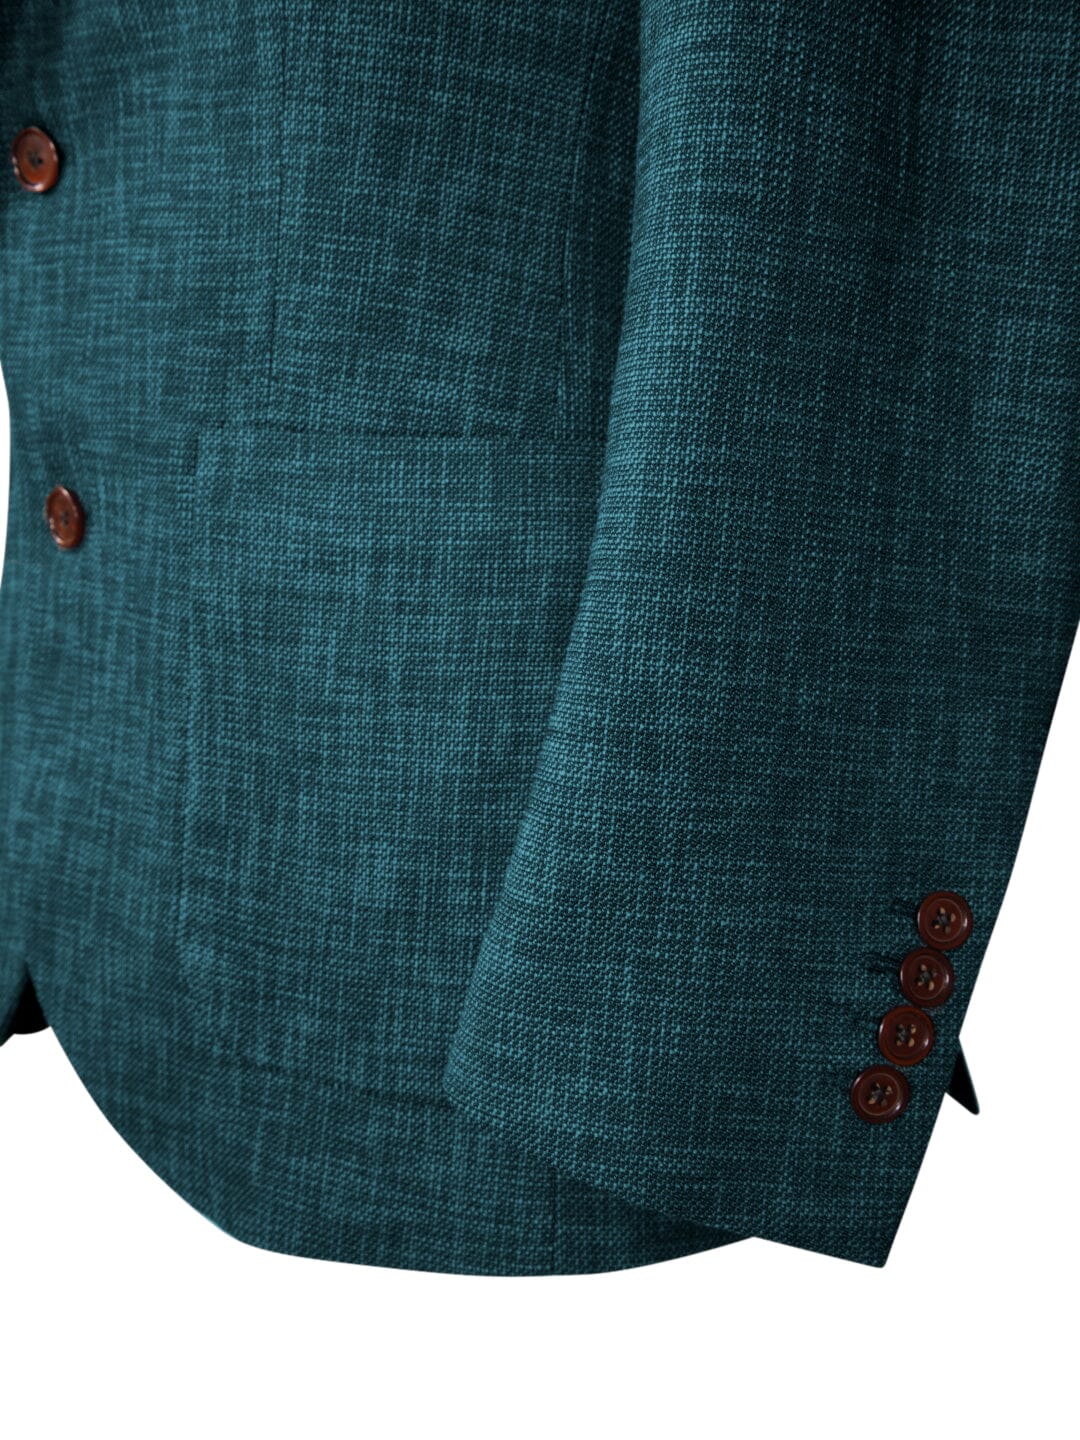 Evergreen Lino Tweed Jacket